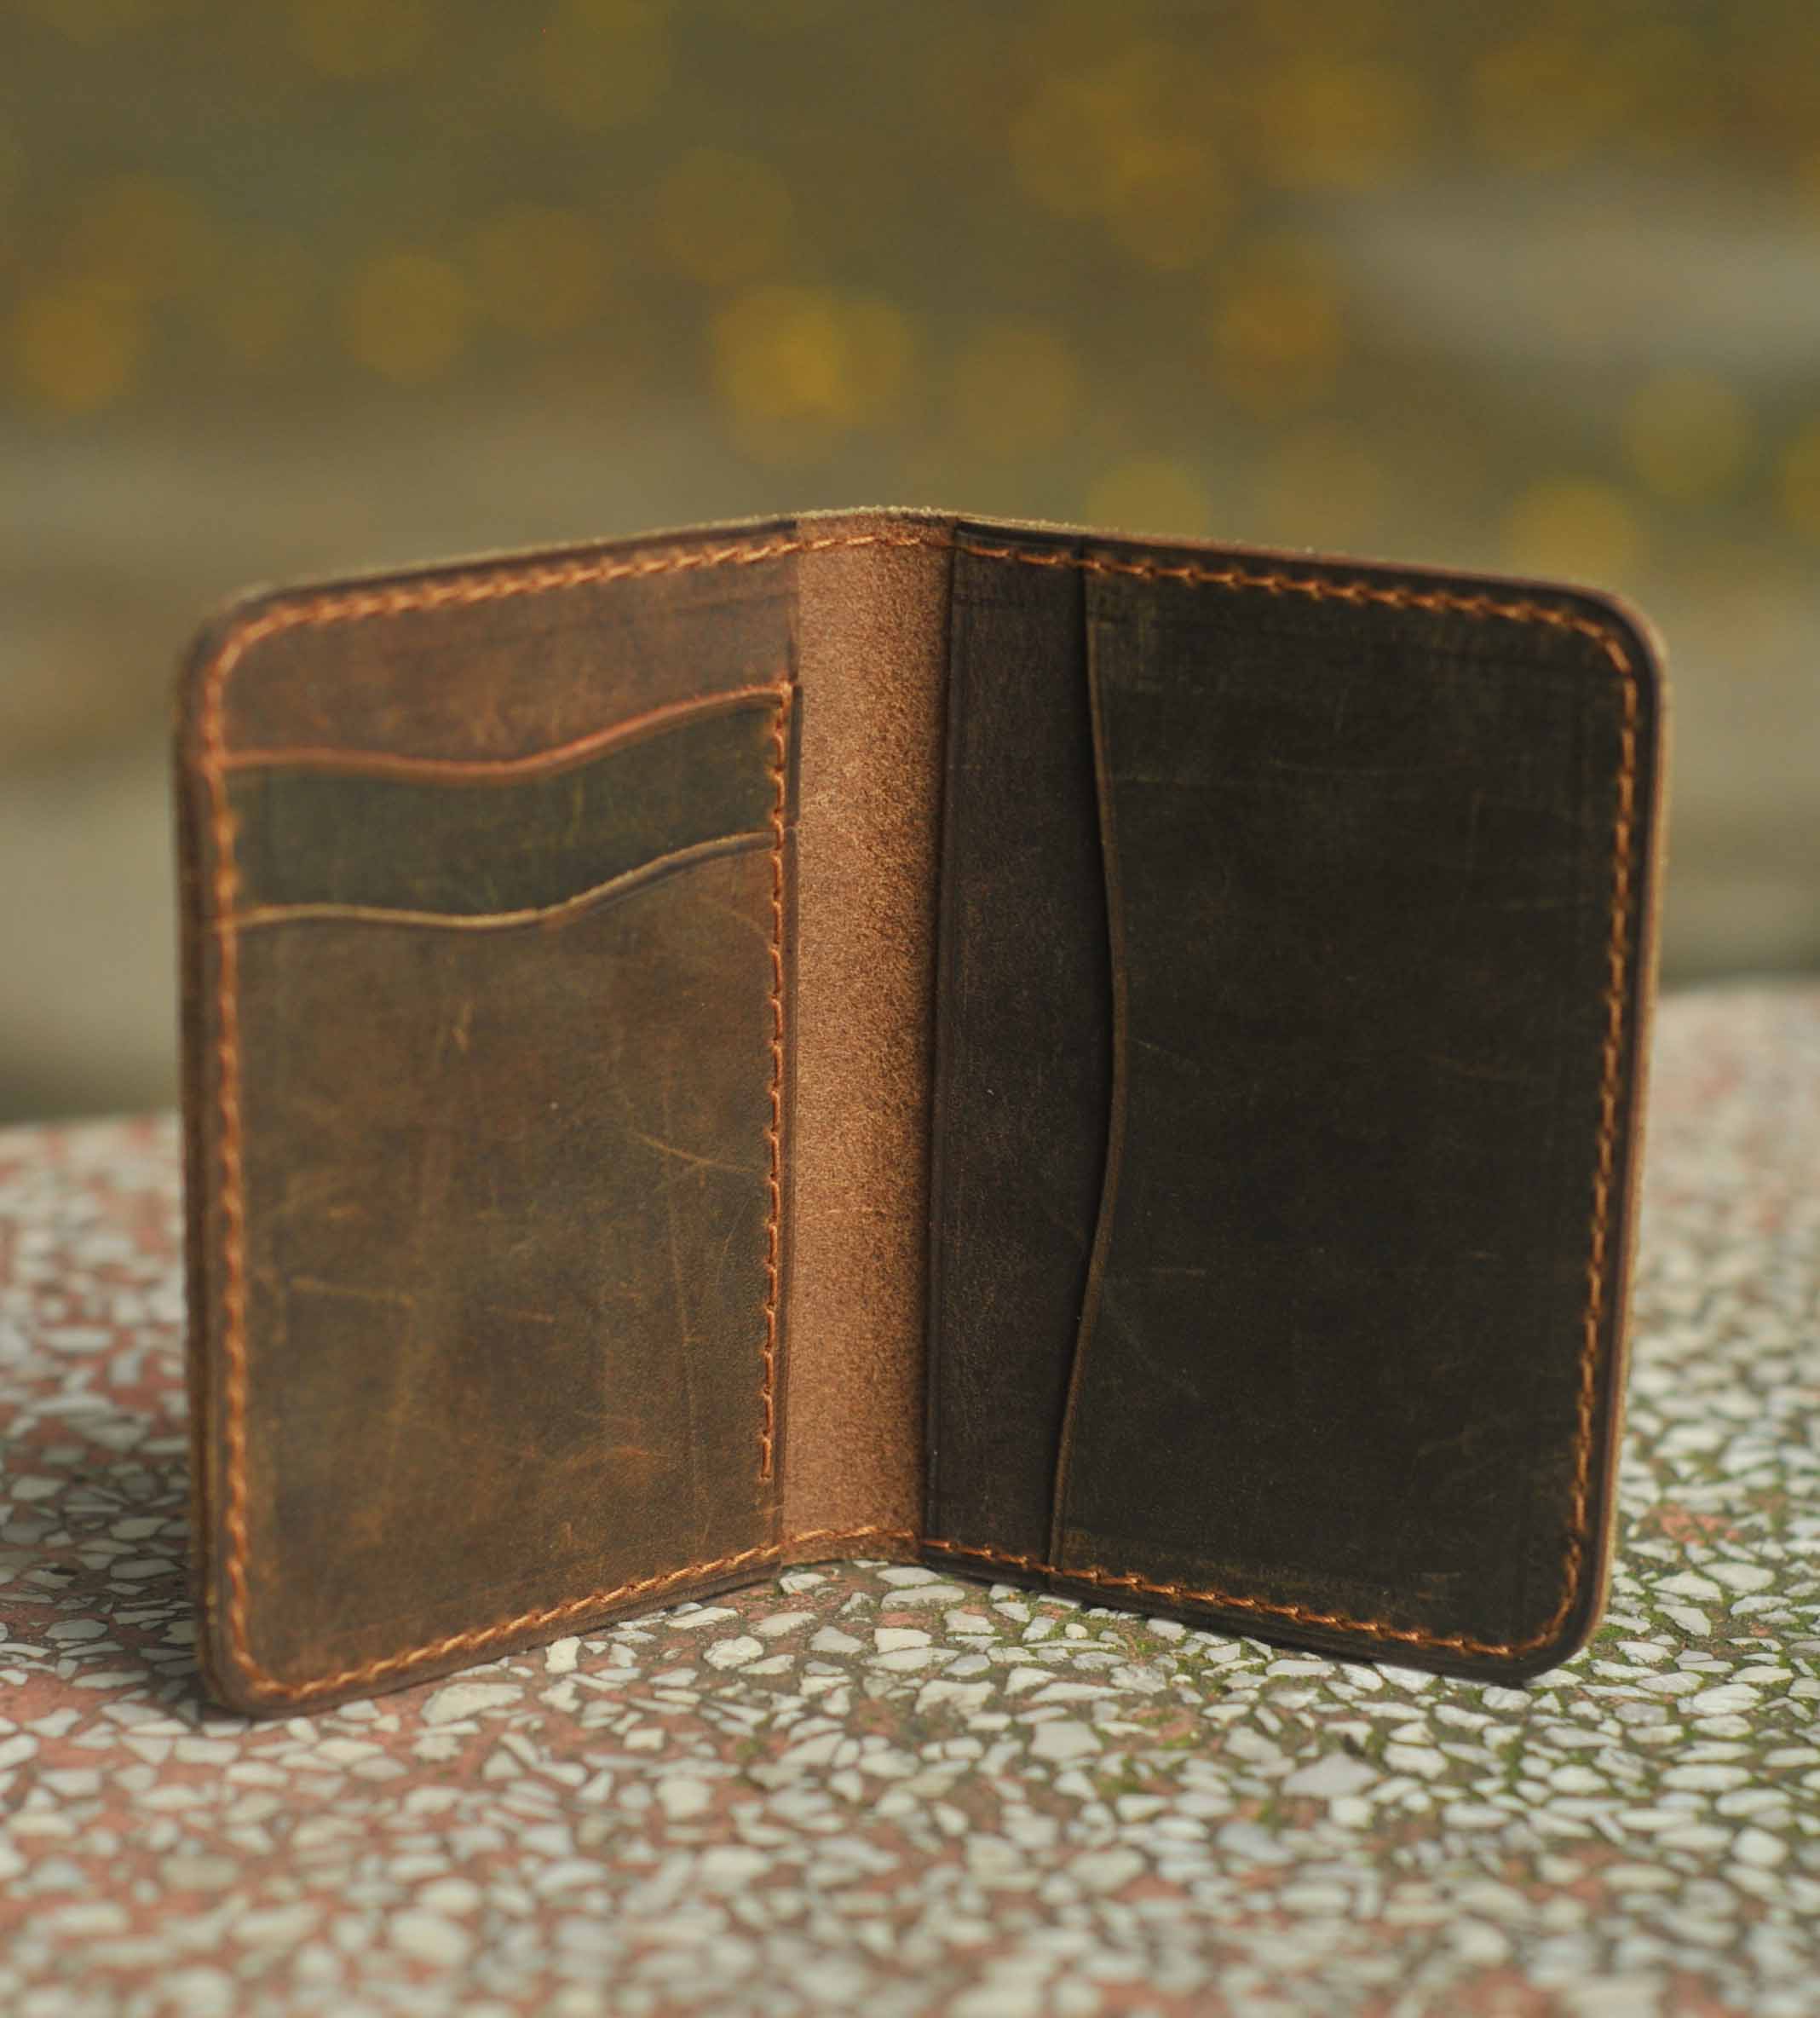 Bóp ví nam nữ đựng thẻ bỏ túi nhỏ gọn chất liệu da bò sáp chuẩn (dáng ví đứng mini)